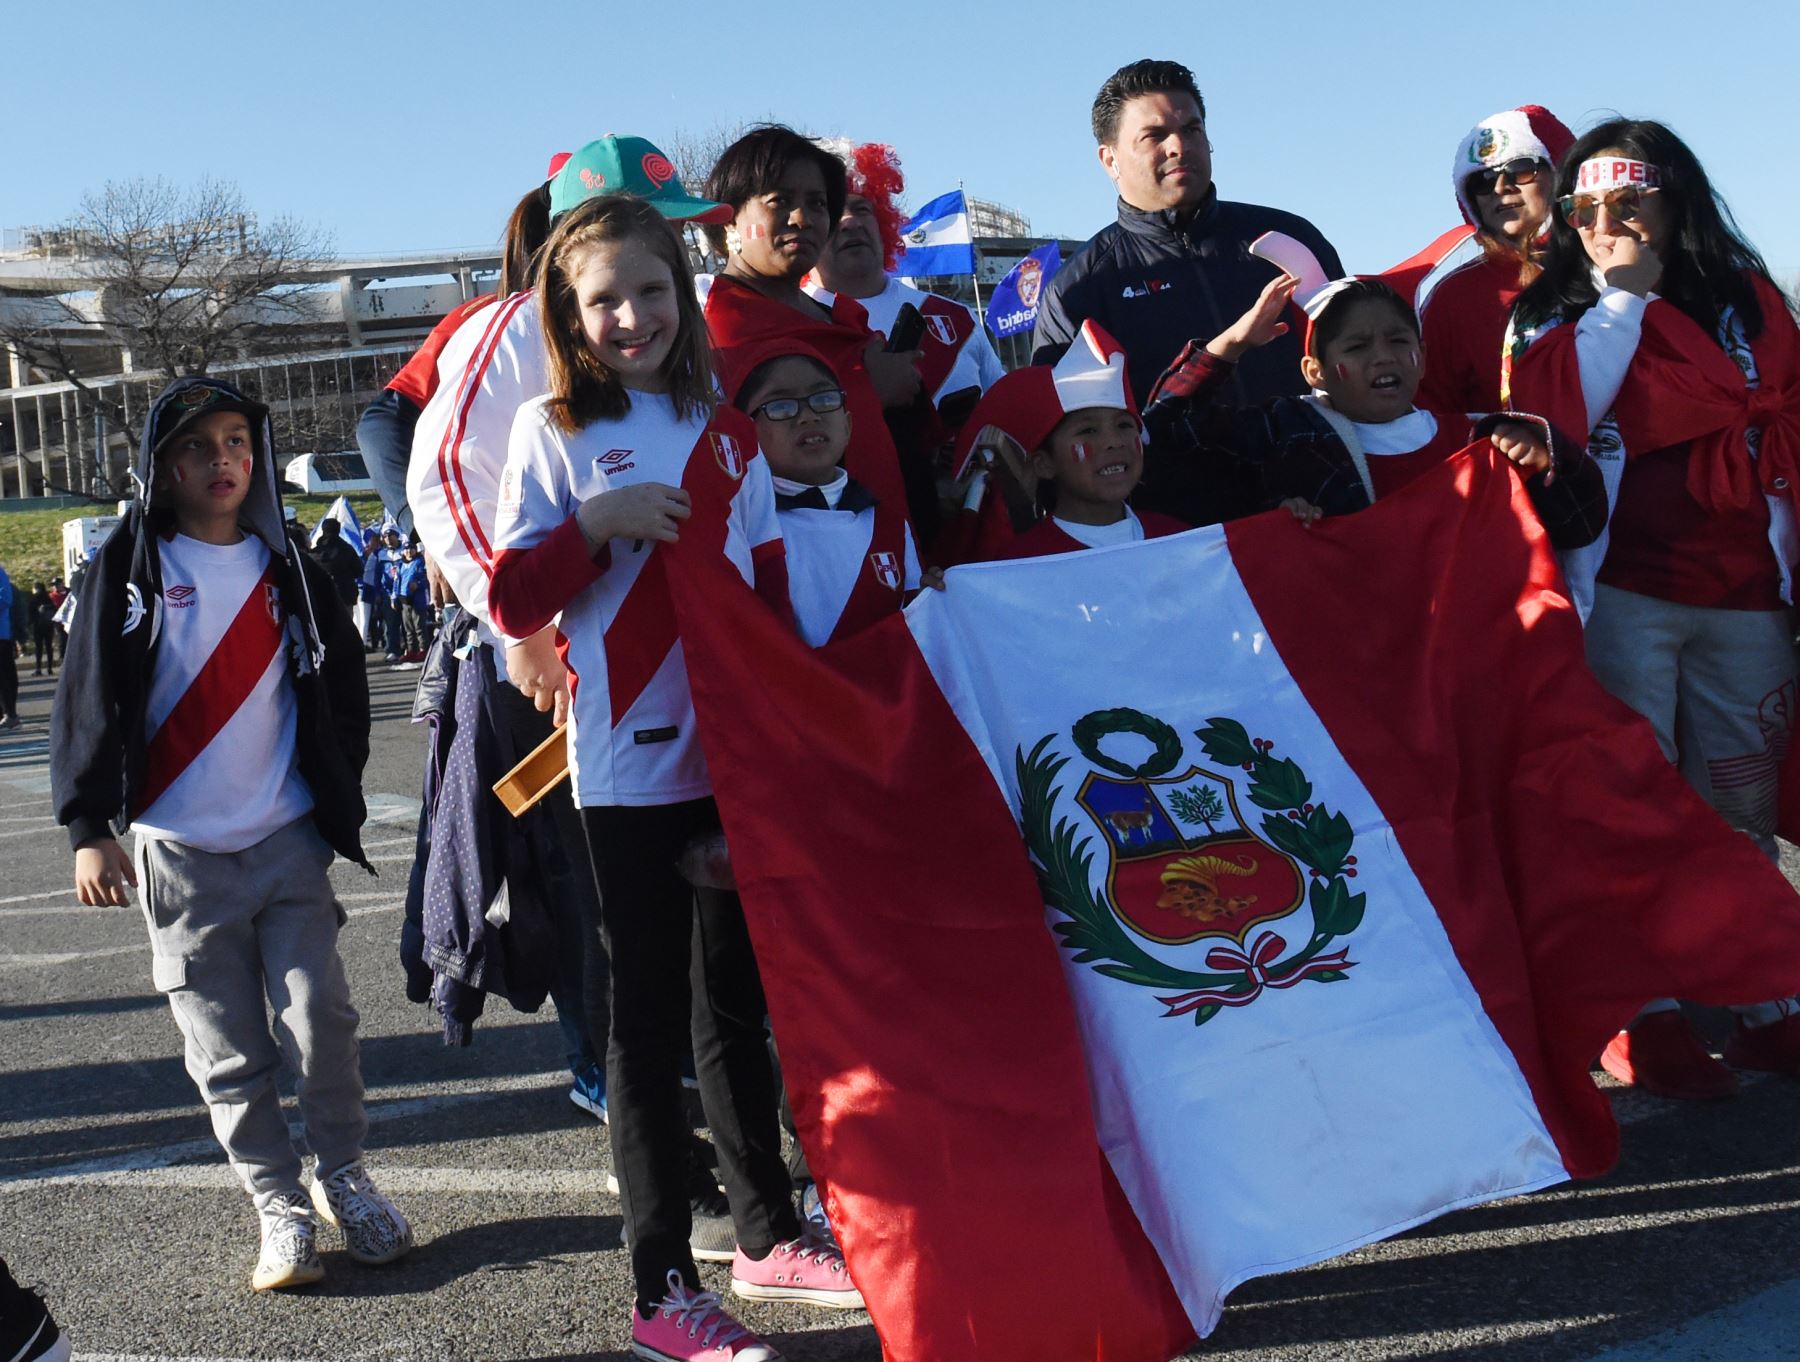 Una familia, fanática del equipo nacional de fútbol peruano, muestra su apoyo antes del partido amistoso internacional entre Perú y El Salvador en el estadio RFK en Washington, DC.Foto:AFP